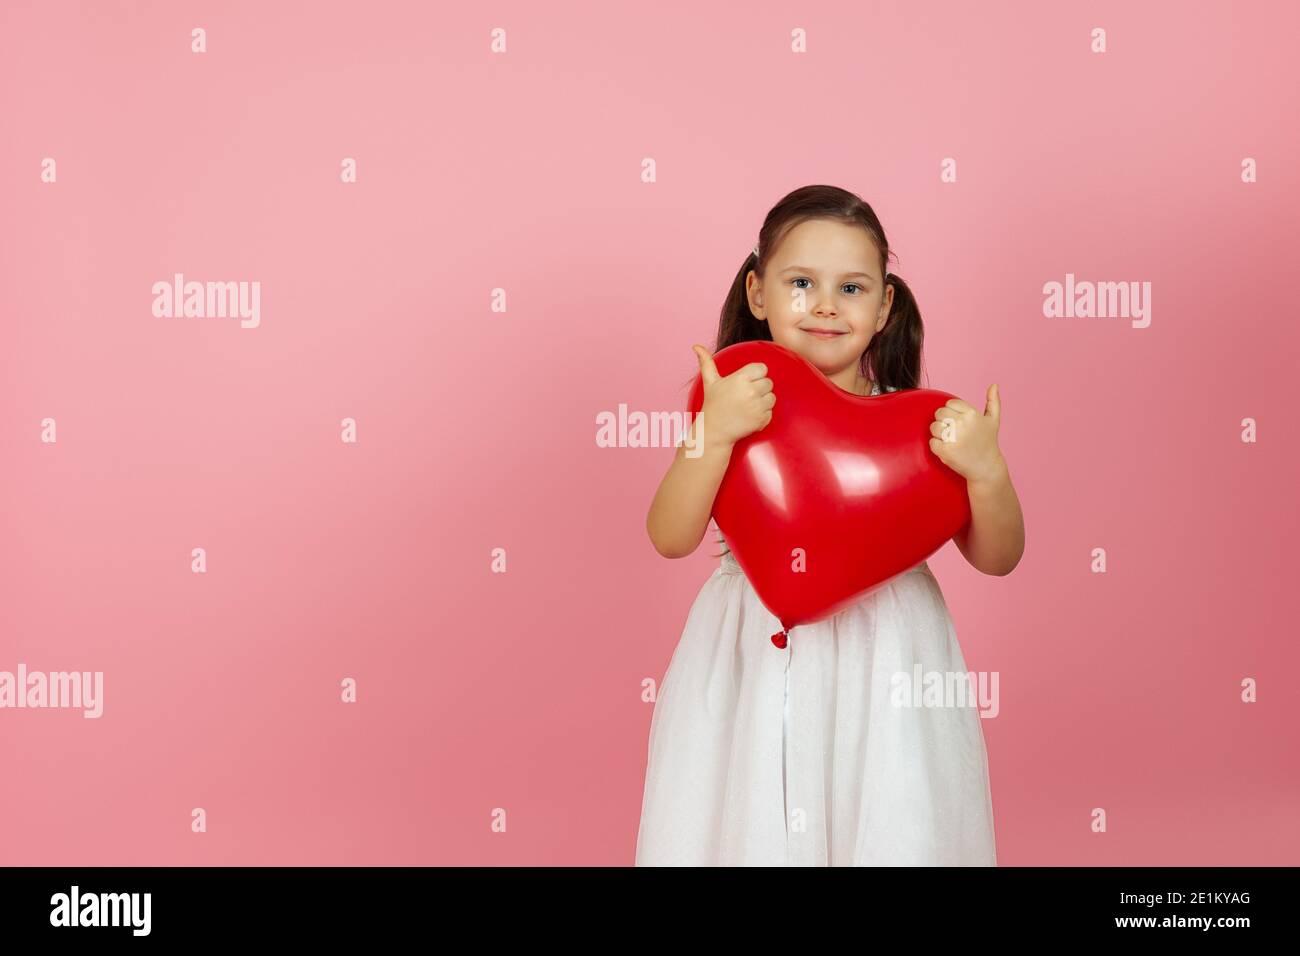 disfrazarse amablemente, niña de corazón en vestido blanco sosteniendo globo rojo en forma de corazón, dando un pulgares en dos manos, aislado en un fondo rosa Foto de stock